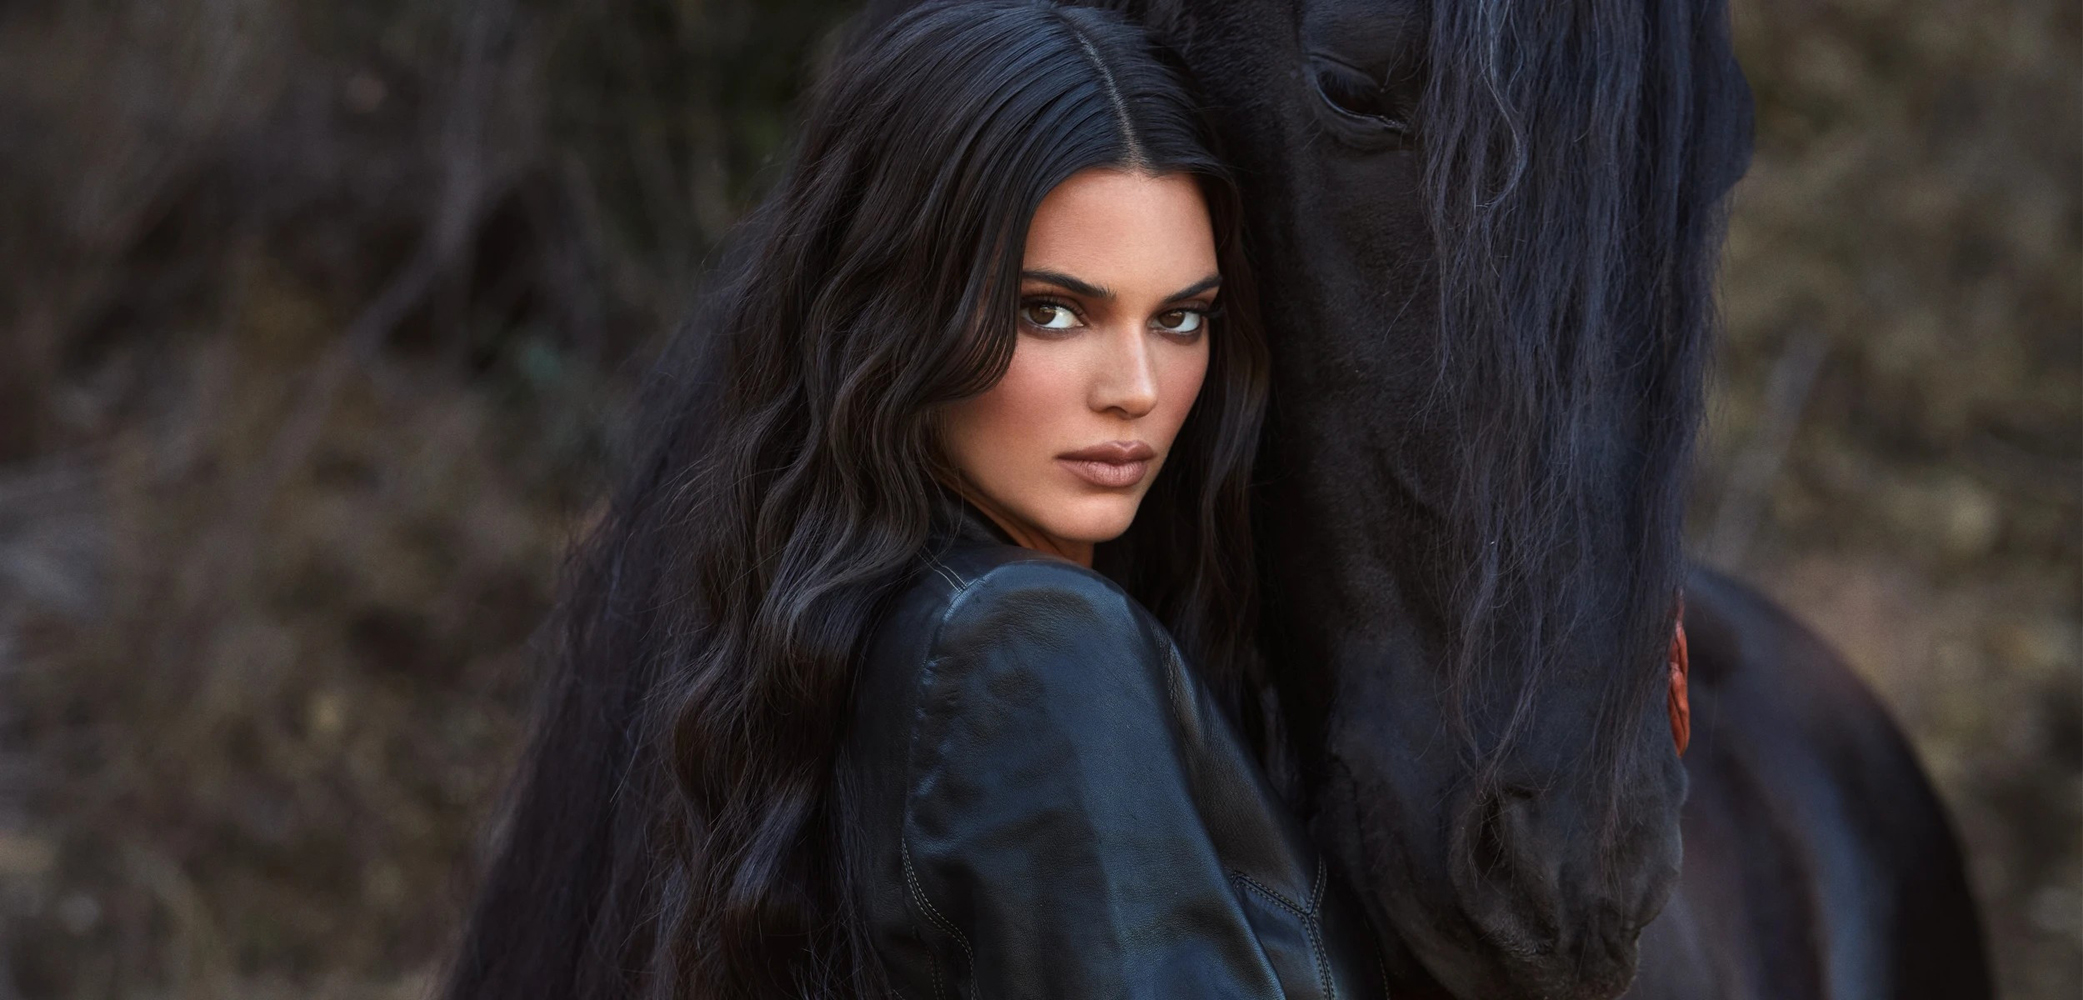 People 2083x1000 Kendall Jenner women model long hair dark hair outdoors women with horse makeup brunette women outdoors